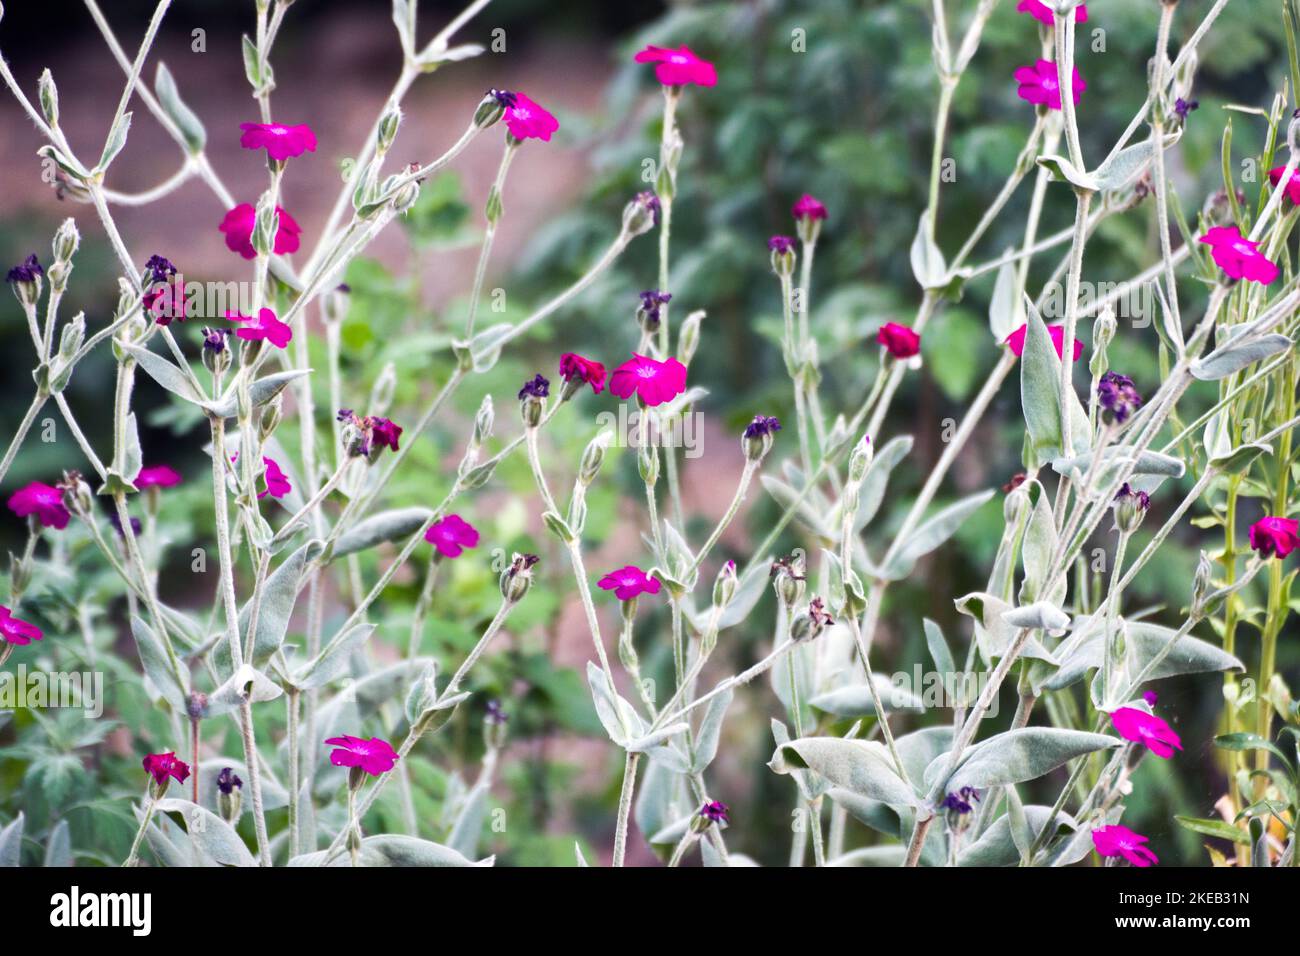 Silene coronaria. Les noms les plus courants sont Rose campion, Dusty miller, mullein-rose, Bloody William et lamp-flower, une plante de la famille des Marguerite. Banque D'Images